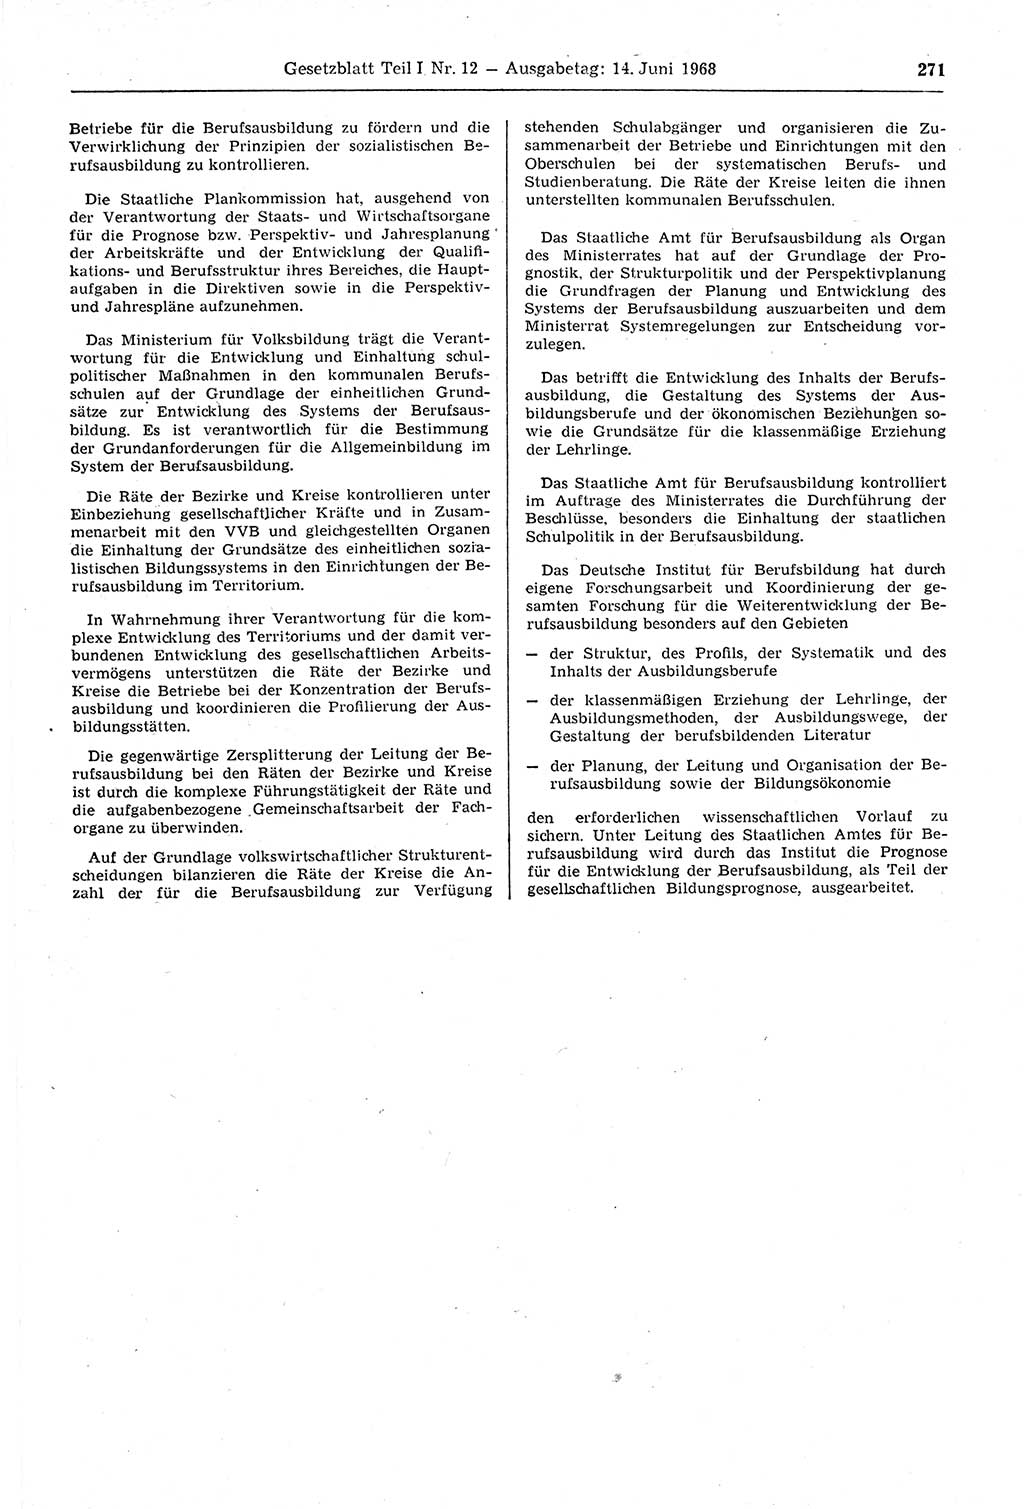 Gesetzblatt (GBl.) der Deutschen Demokratischen Republik (DDR) Teil Ⅰ 1968, Seite 271 (GBl. DDR Ⅰ 1968, S. 271)